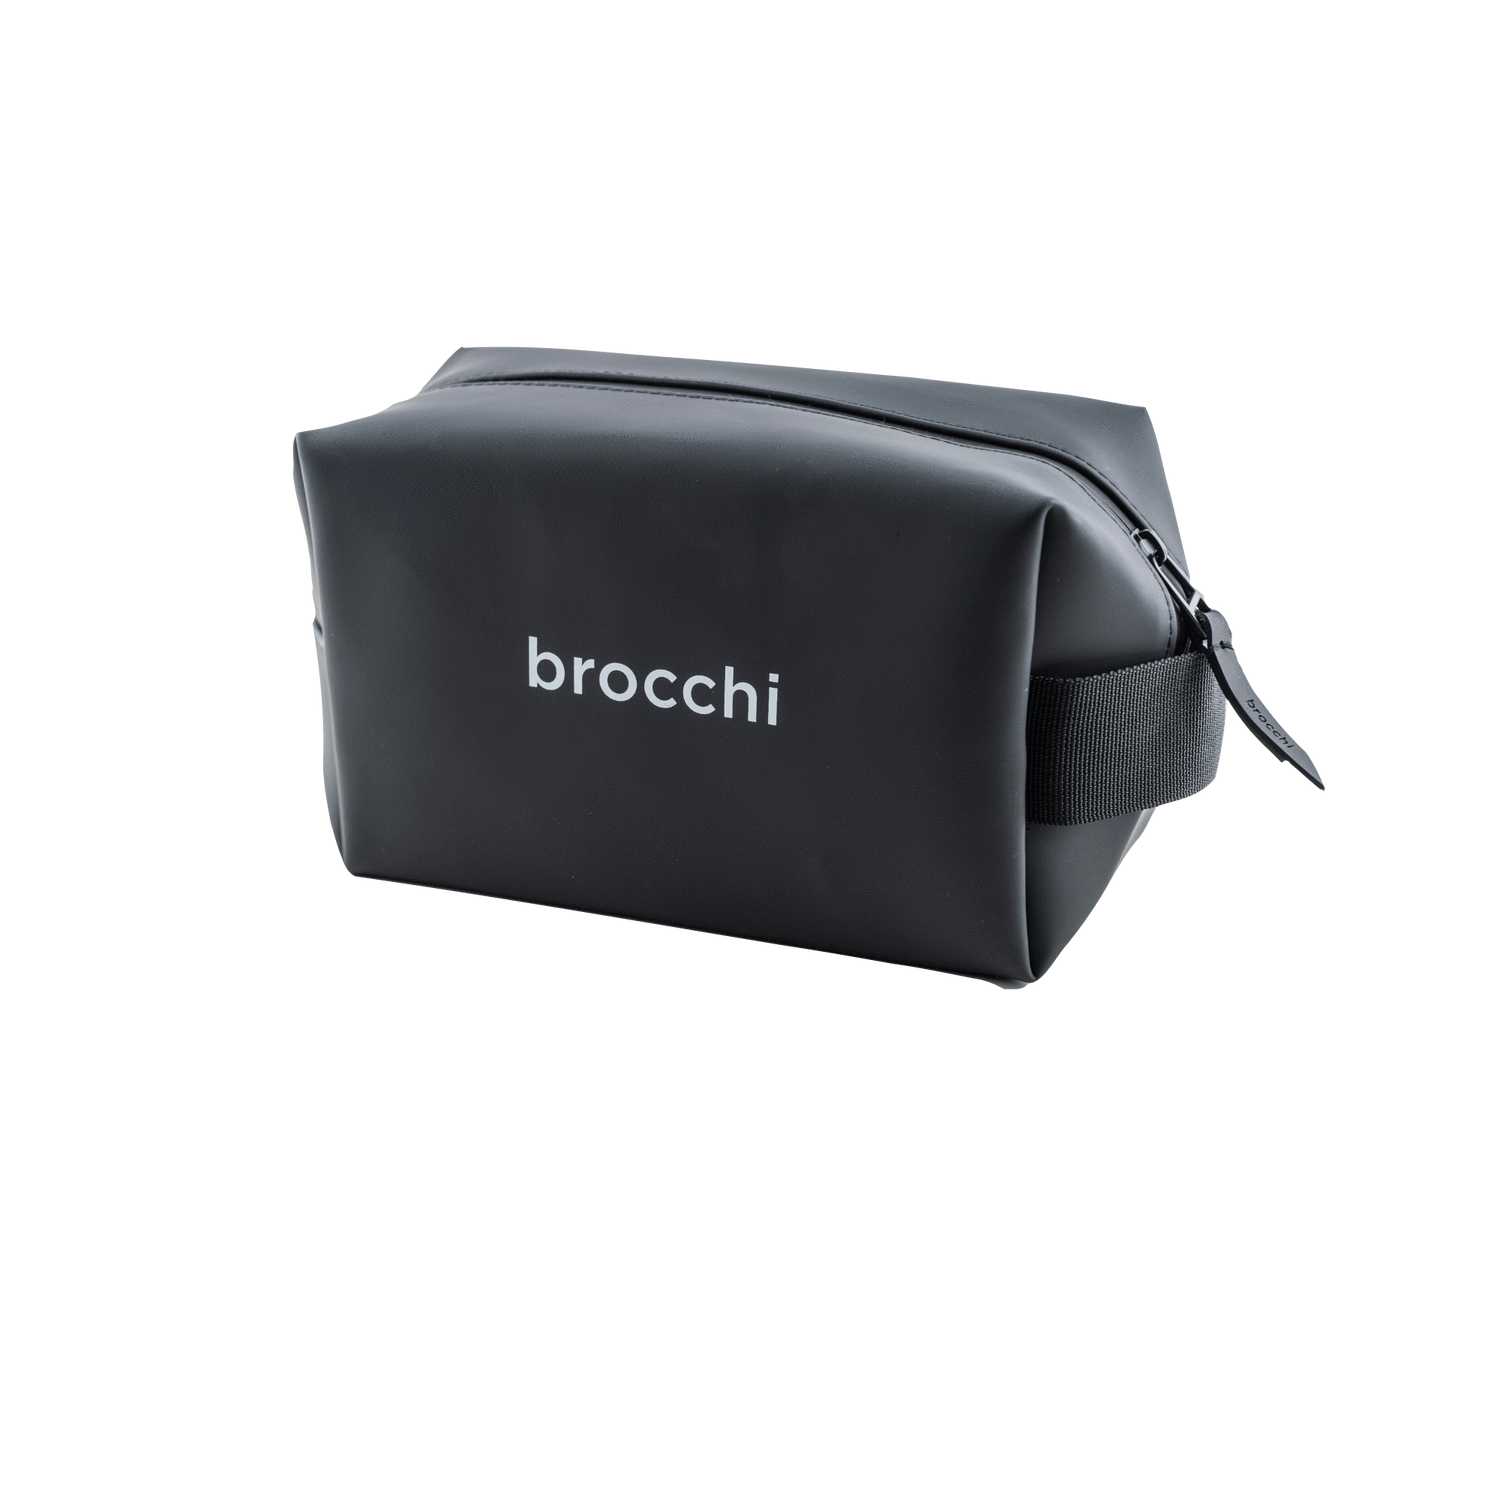 Brocchi Brocchi Waterproof Travel Toiletry Bag